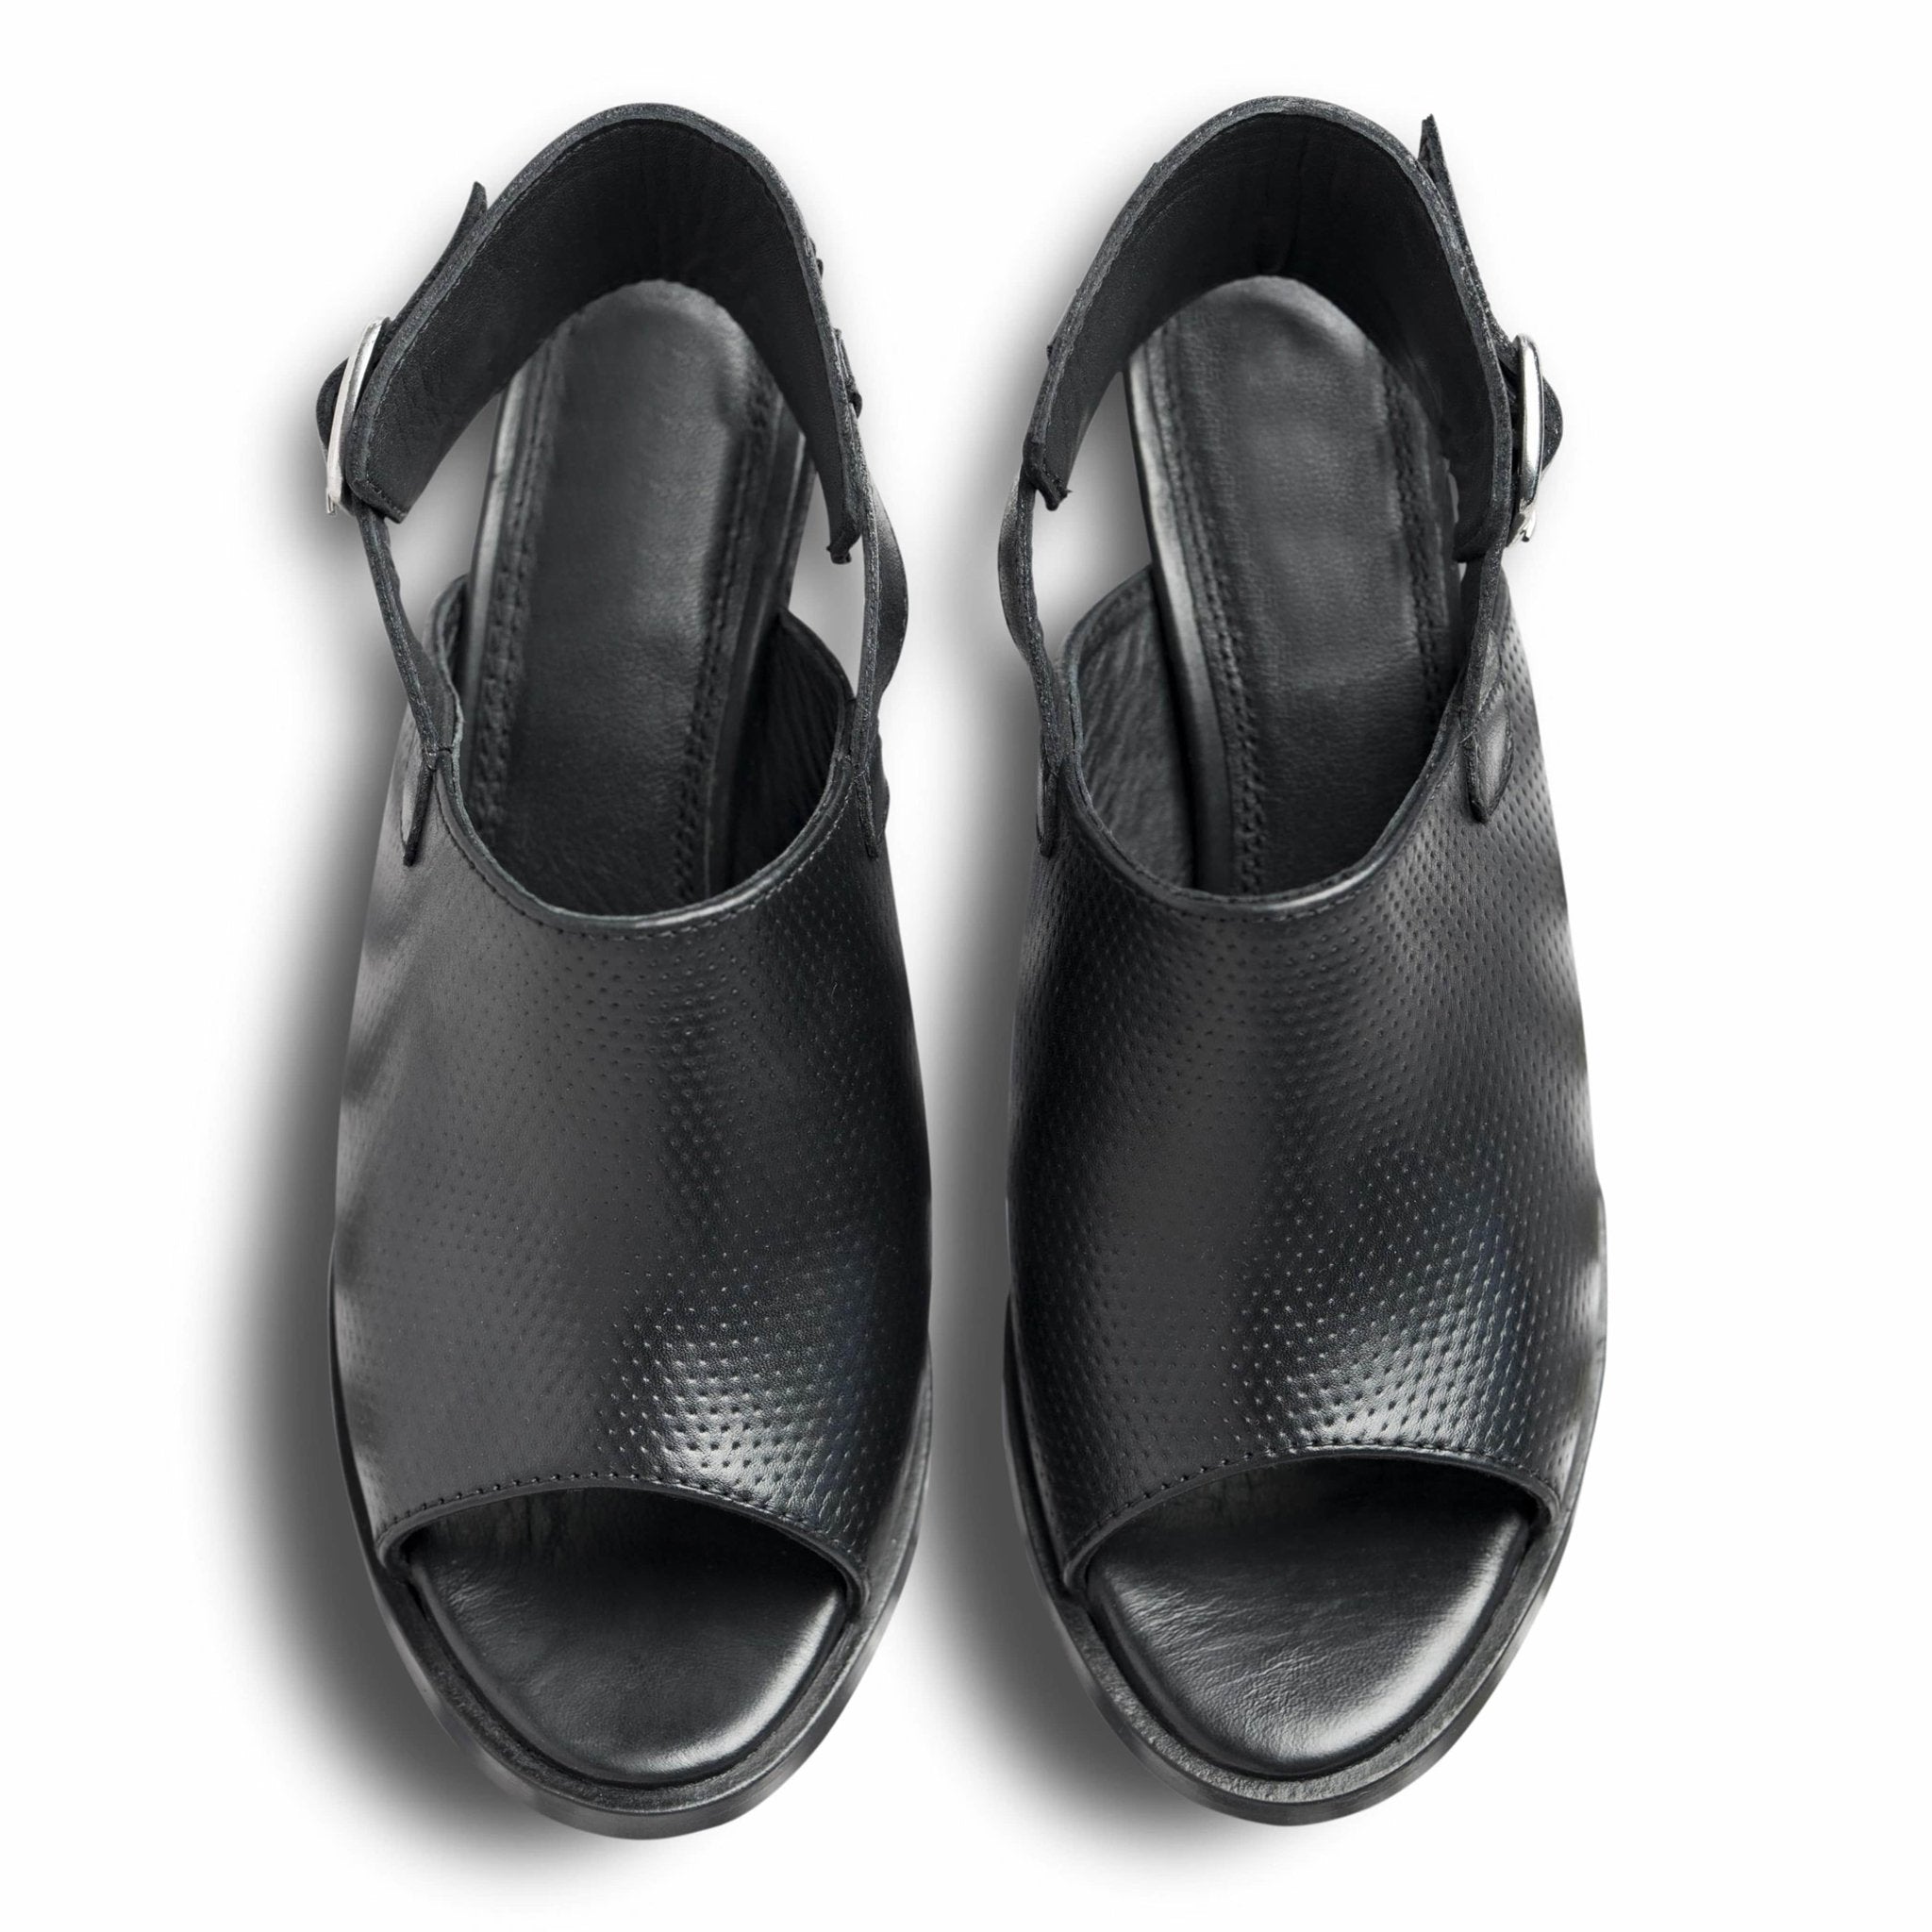 Sandalo Nera - dmodot Shoes